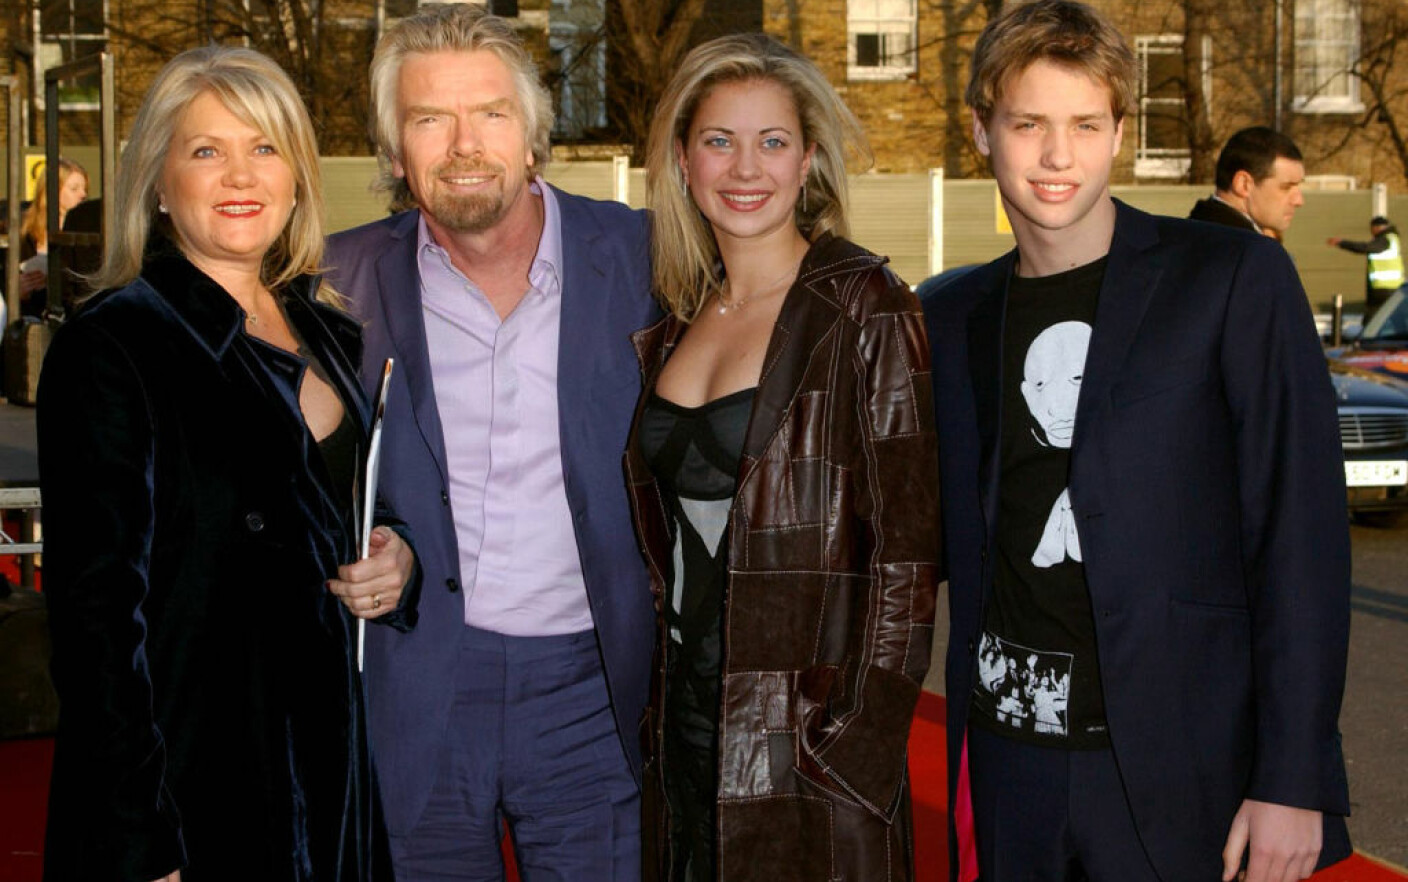 Fotografie de familie a miliardarului Richard Branson furată din Anglia, descoperită în Vaslui. Cum a fost posibil